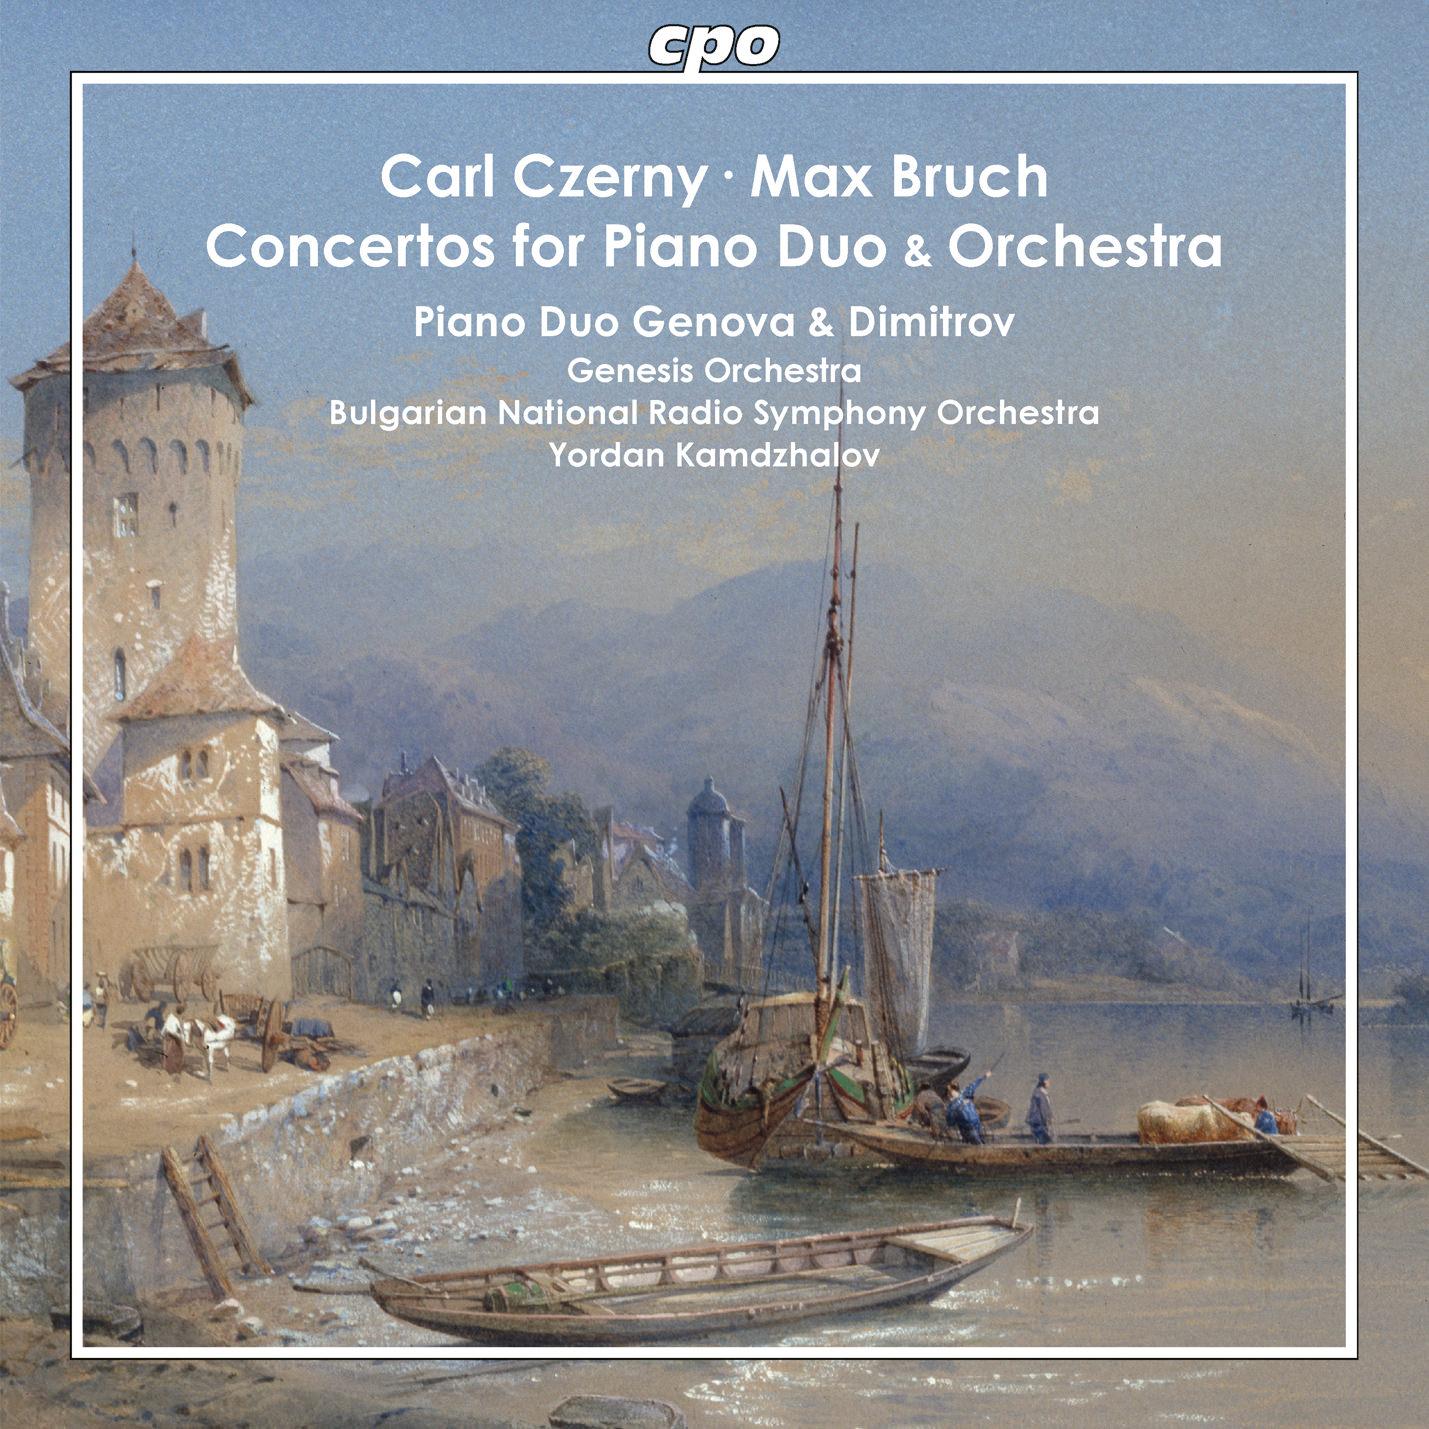 Carl Czerny & Max Bruch • Konzerte für Klavierduo und Orchester (cpo 555 090-2) |Cover